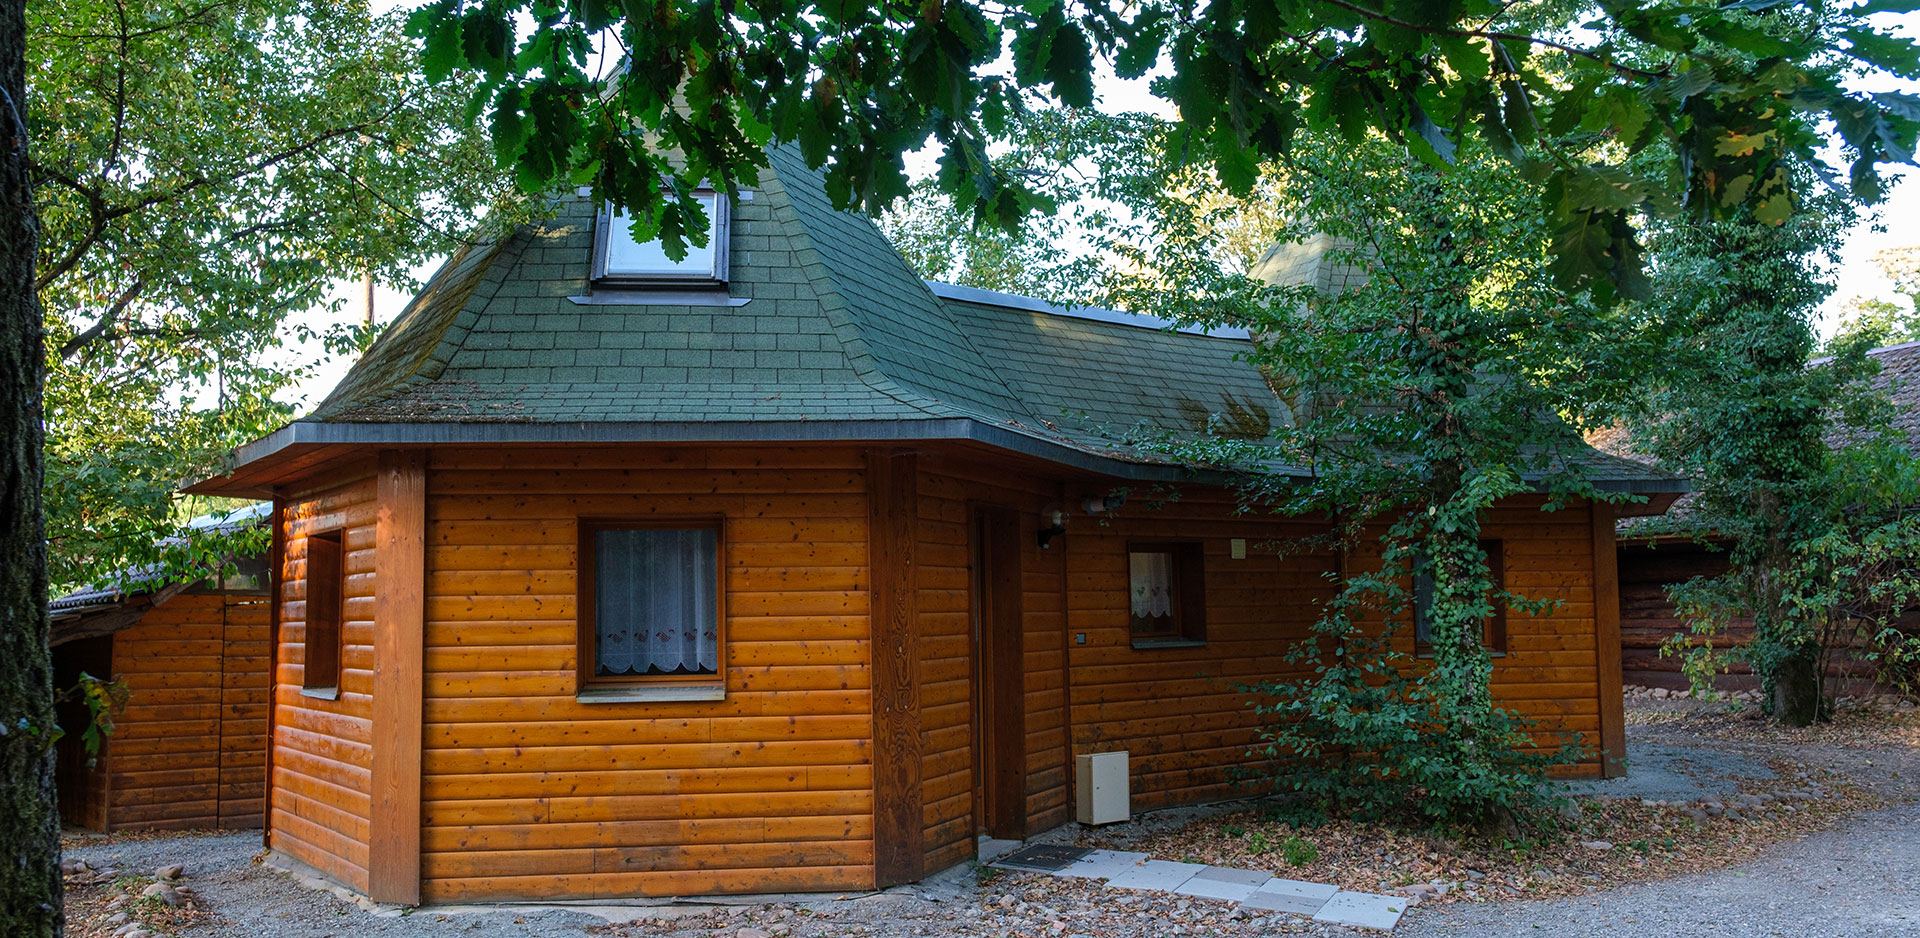 Vakantiehuis, houten chalet in de buurt van Colmar